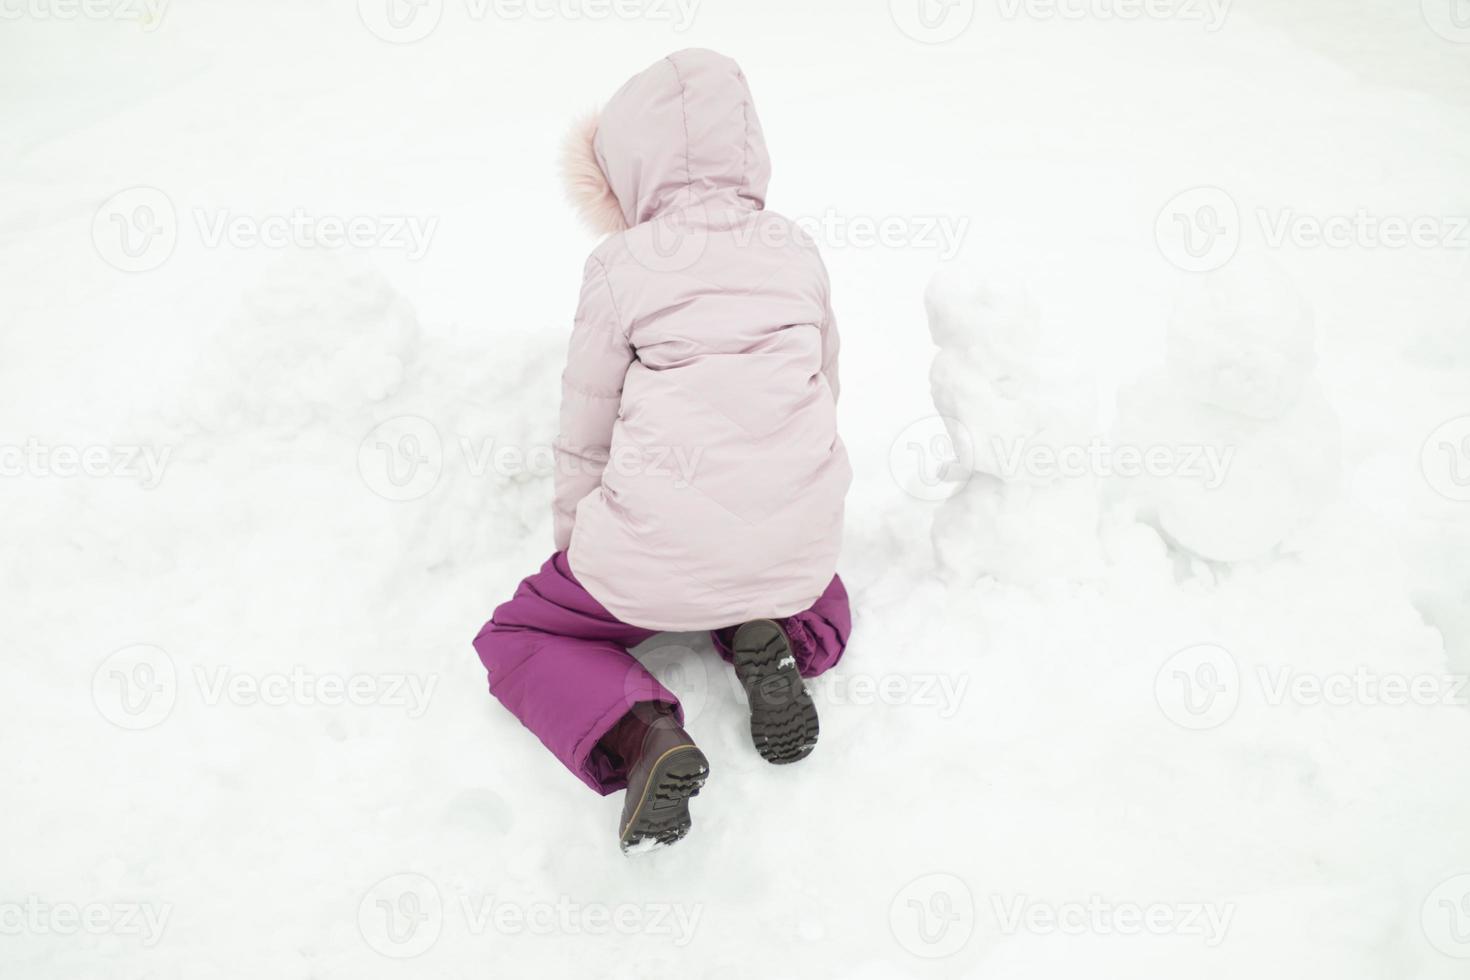 niño juega en la nieve. chica en invierno. ropa de abrigo en el niño. foto